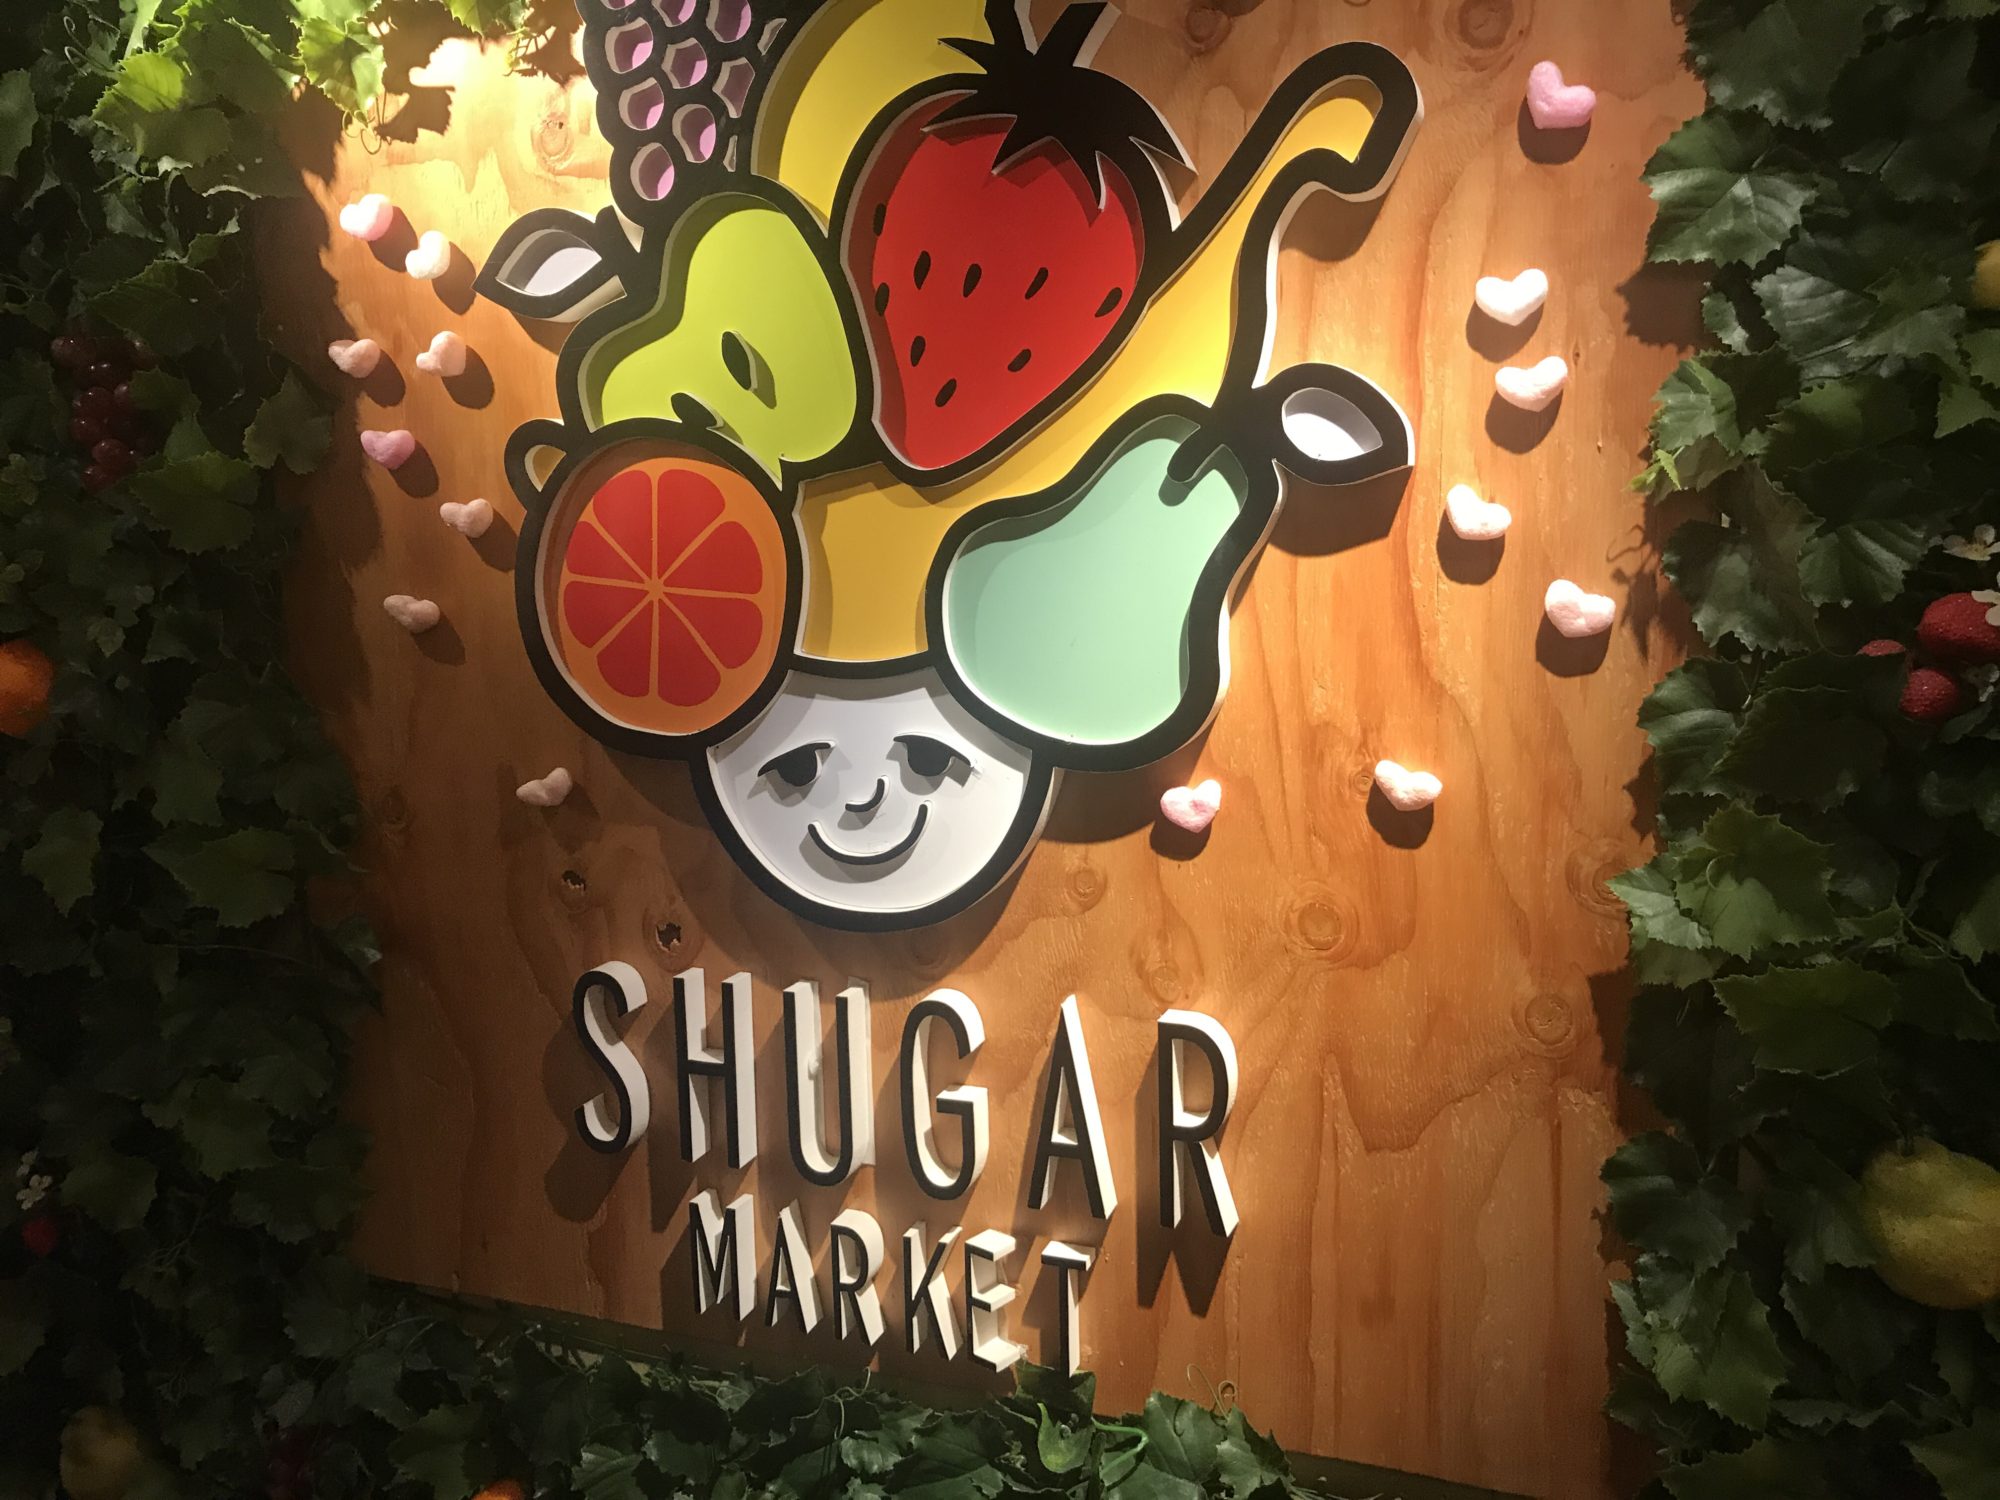 果実酒100種類 飲み放題 Sugar Market 新宿で梅酒 おいしい梅酒の作り方